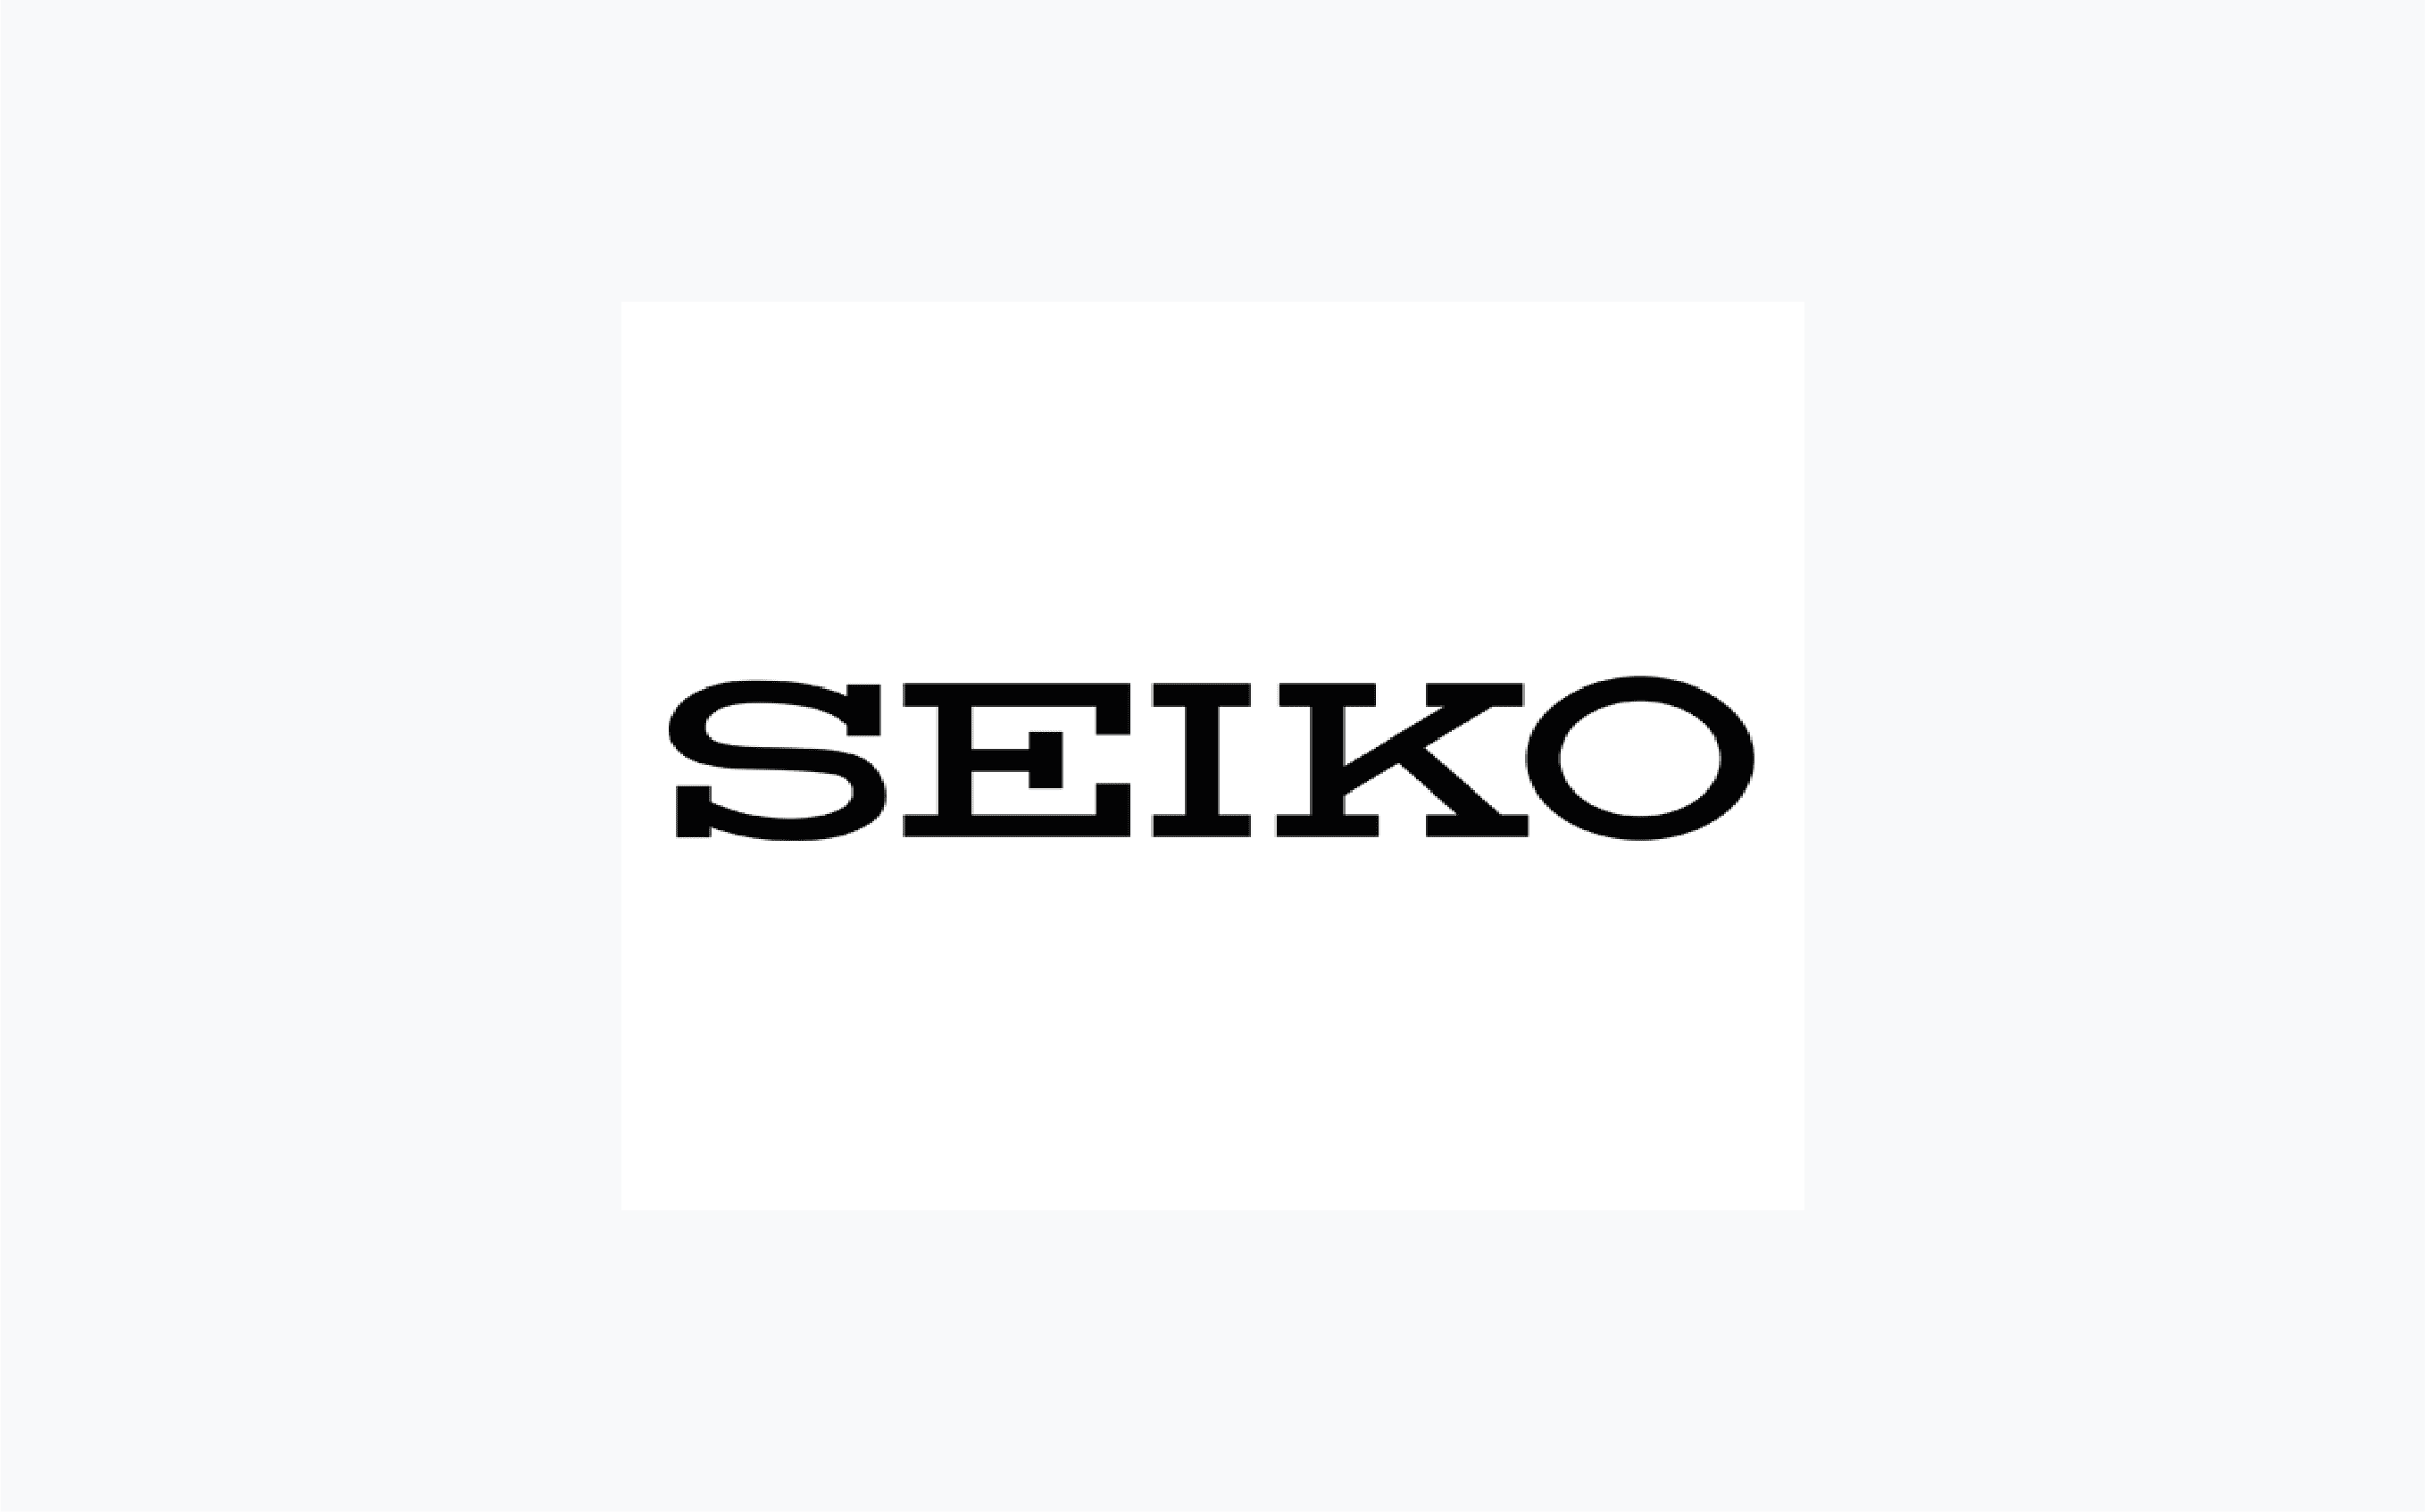 Seiko category